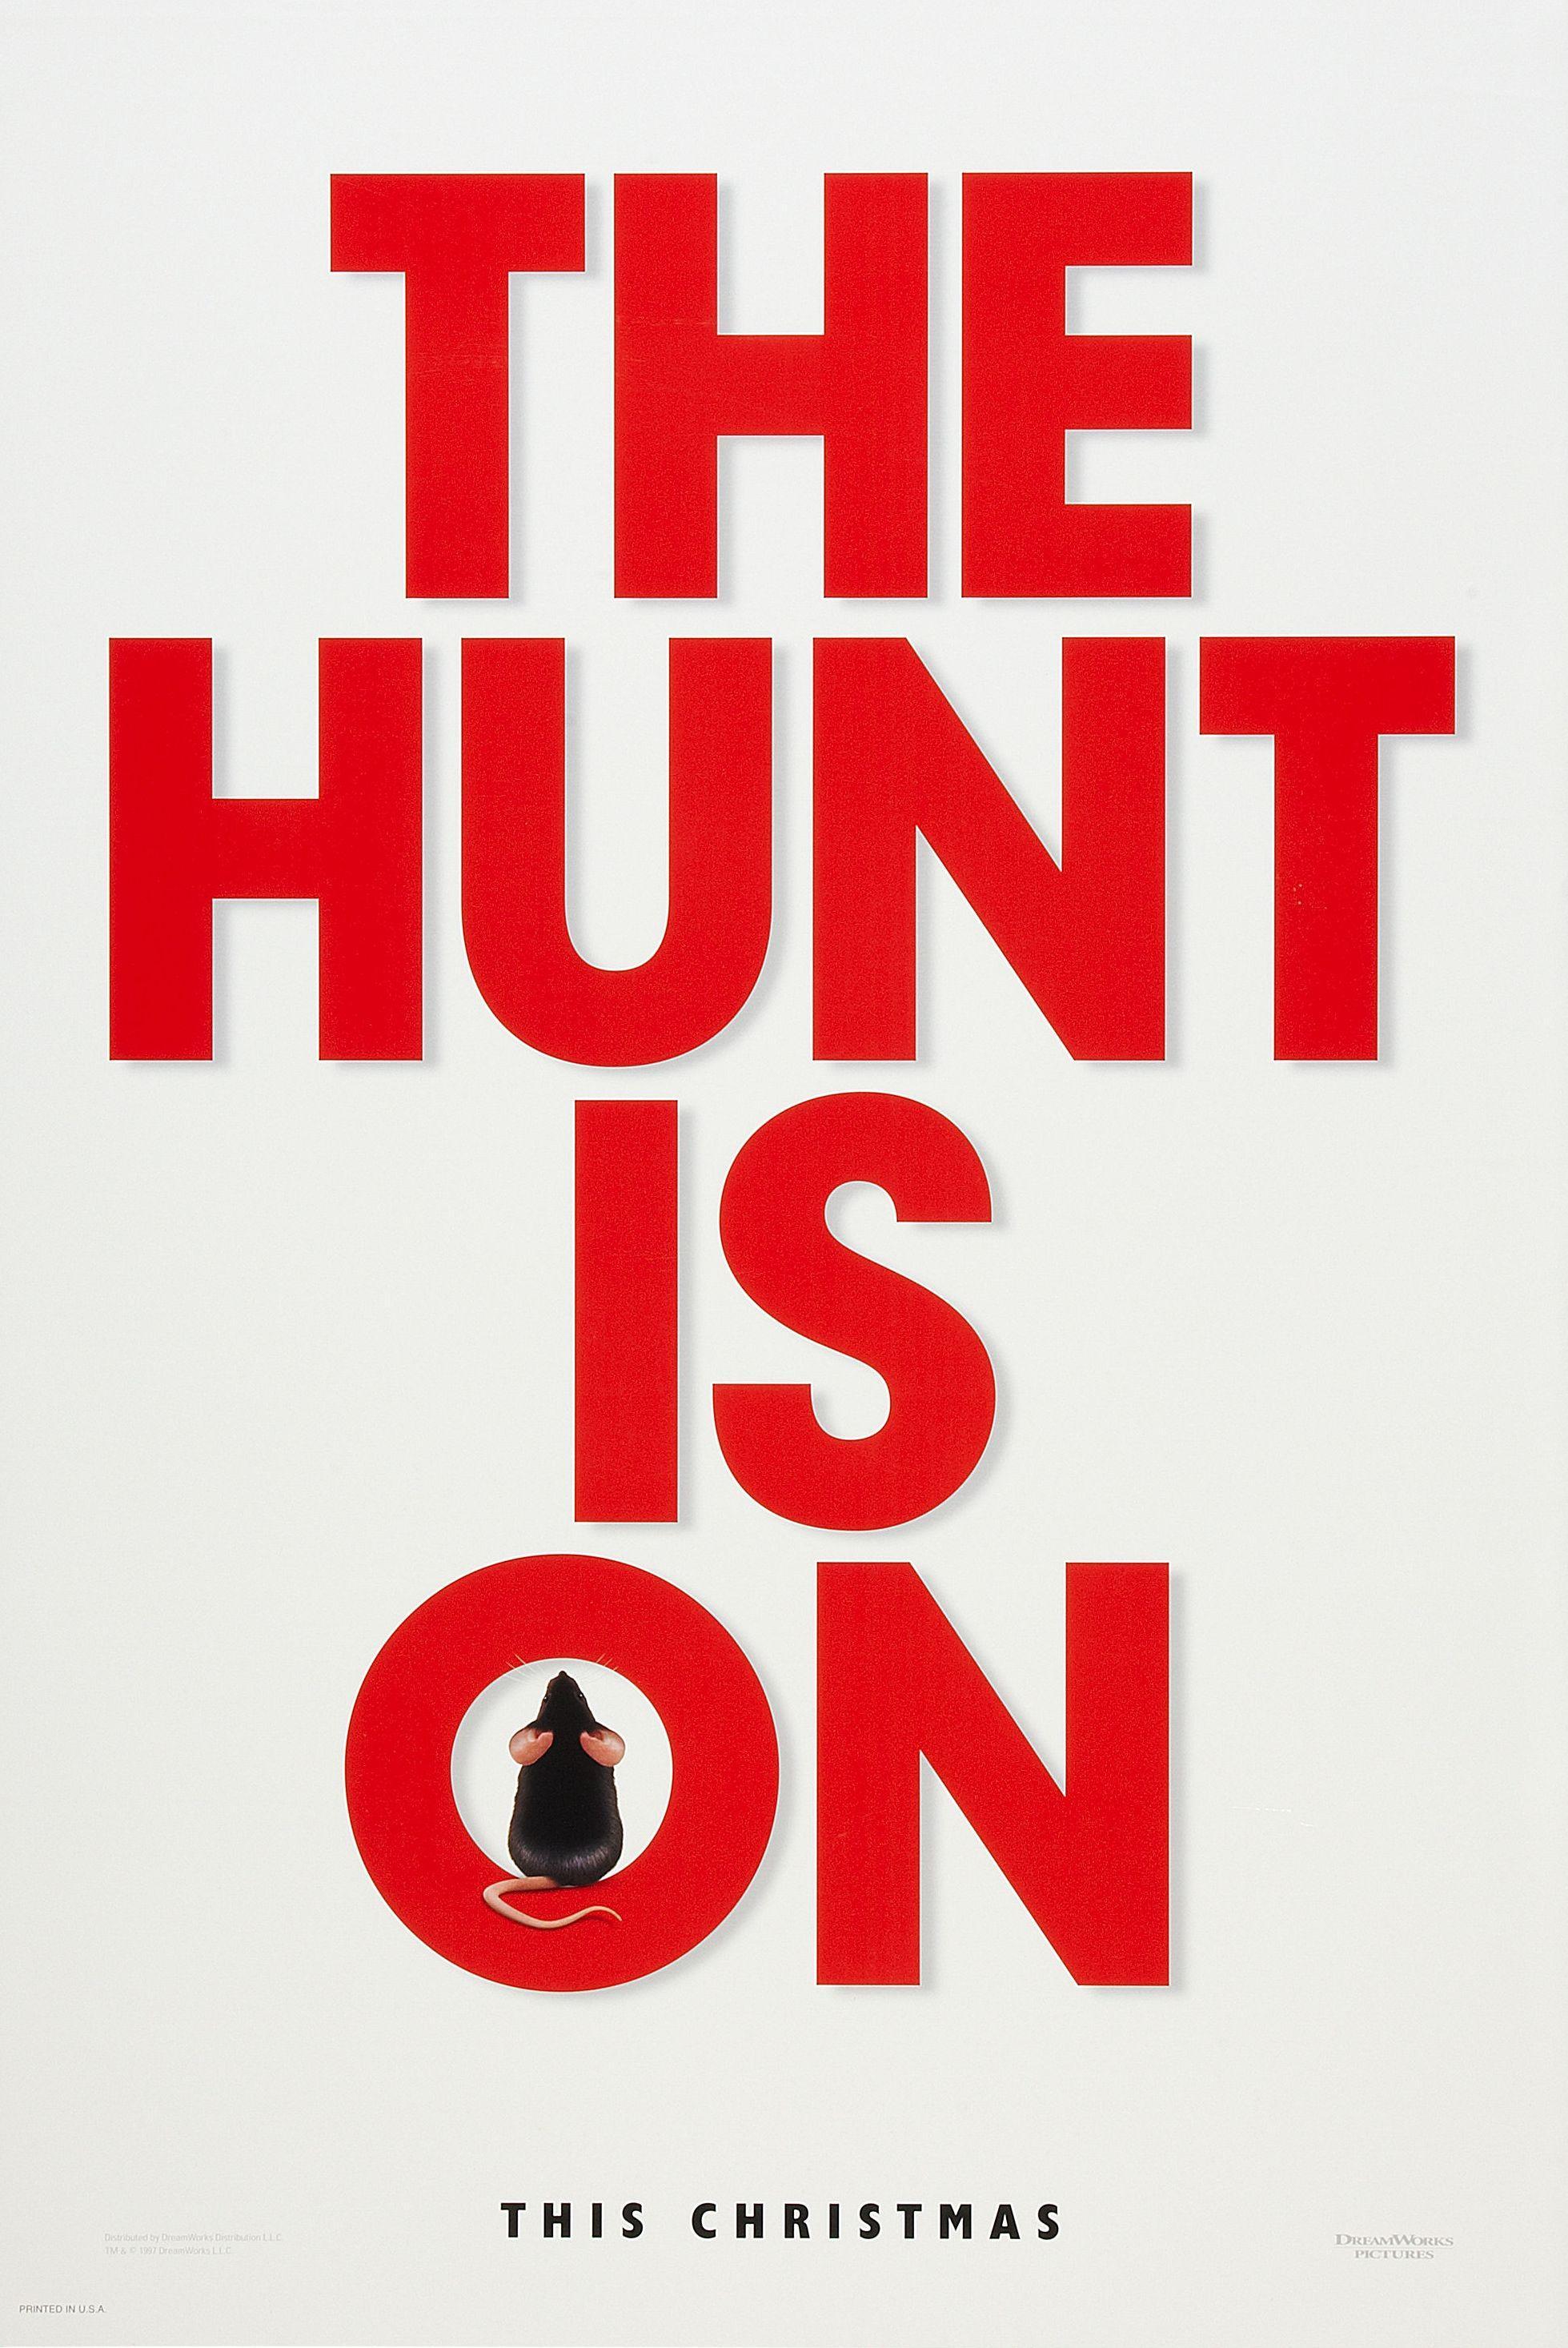 Постер фильма Мышиная охота | Mousehunt